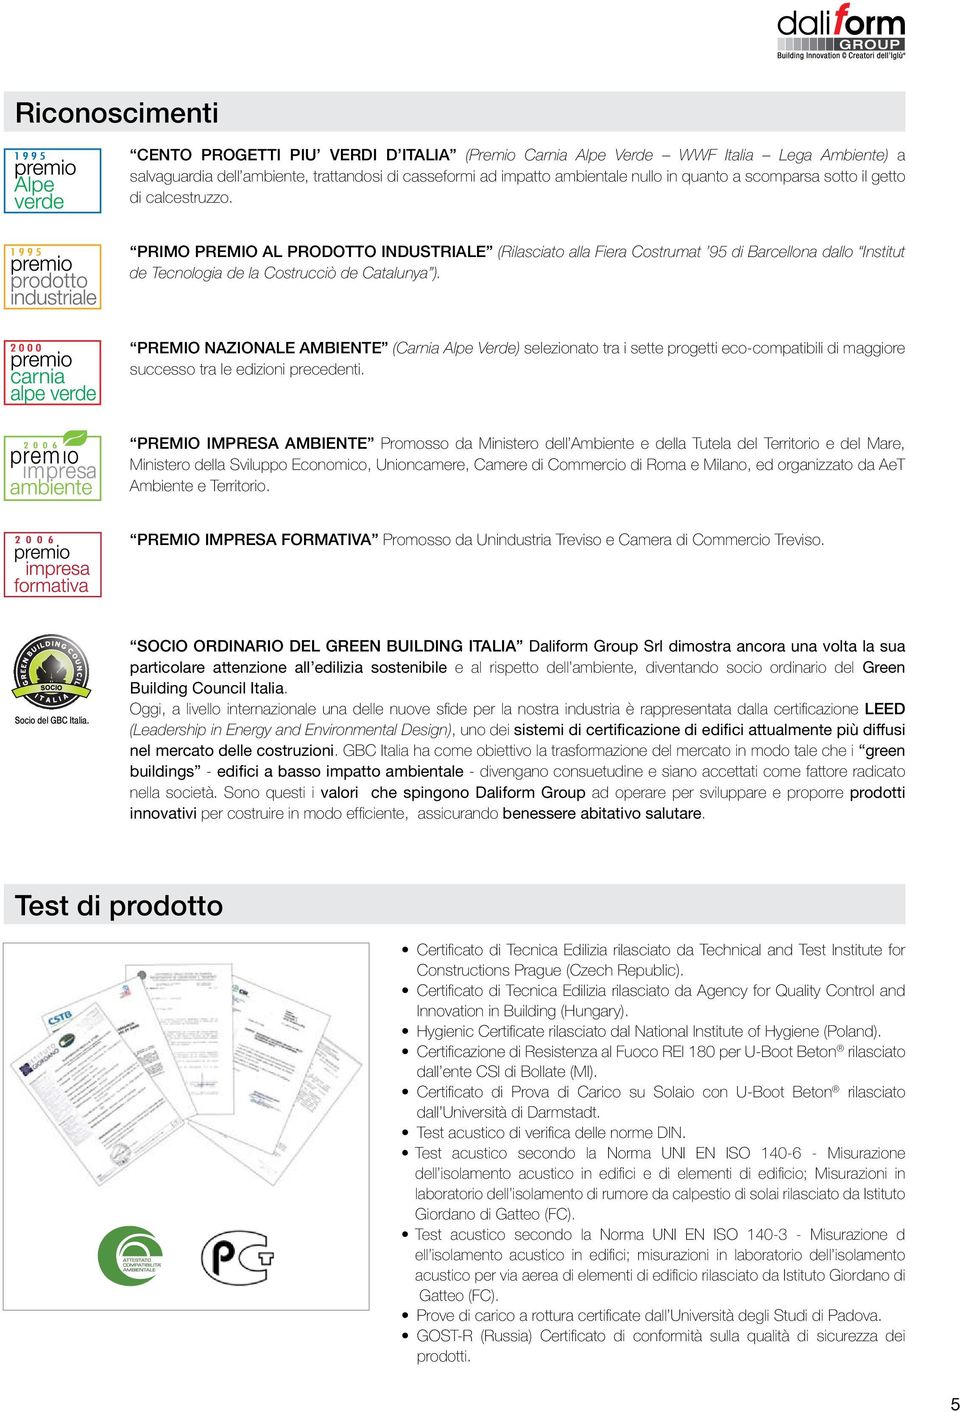 PREMIO NAZIONALE AMBIENTE (Carnia Alpe Verde) selezionato tra i sette progetti eco-compatibili di maggiore successo tra le edizioni precedenti.